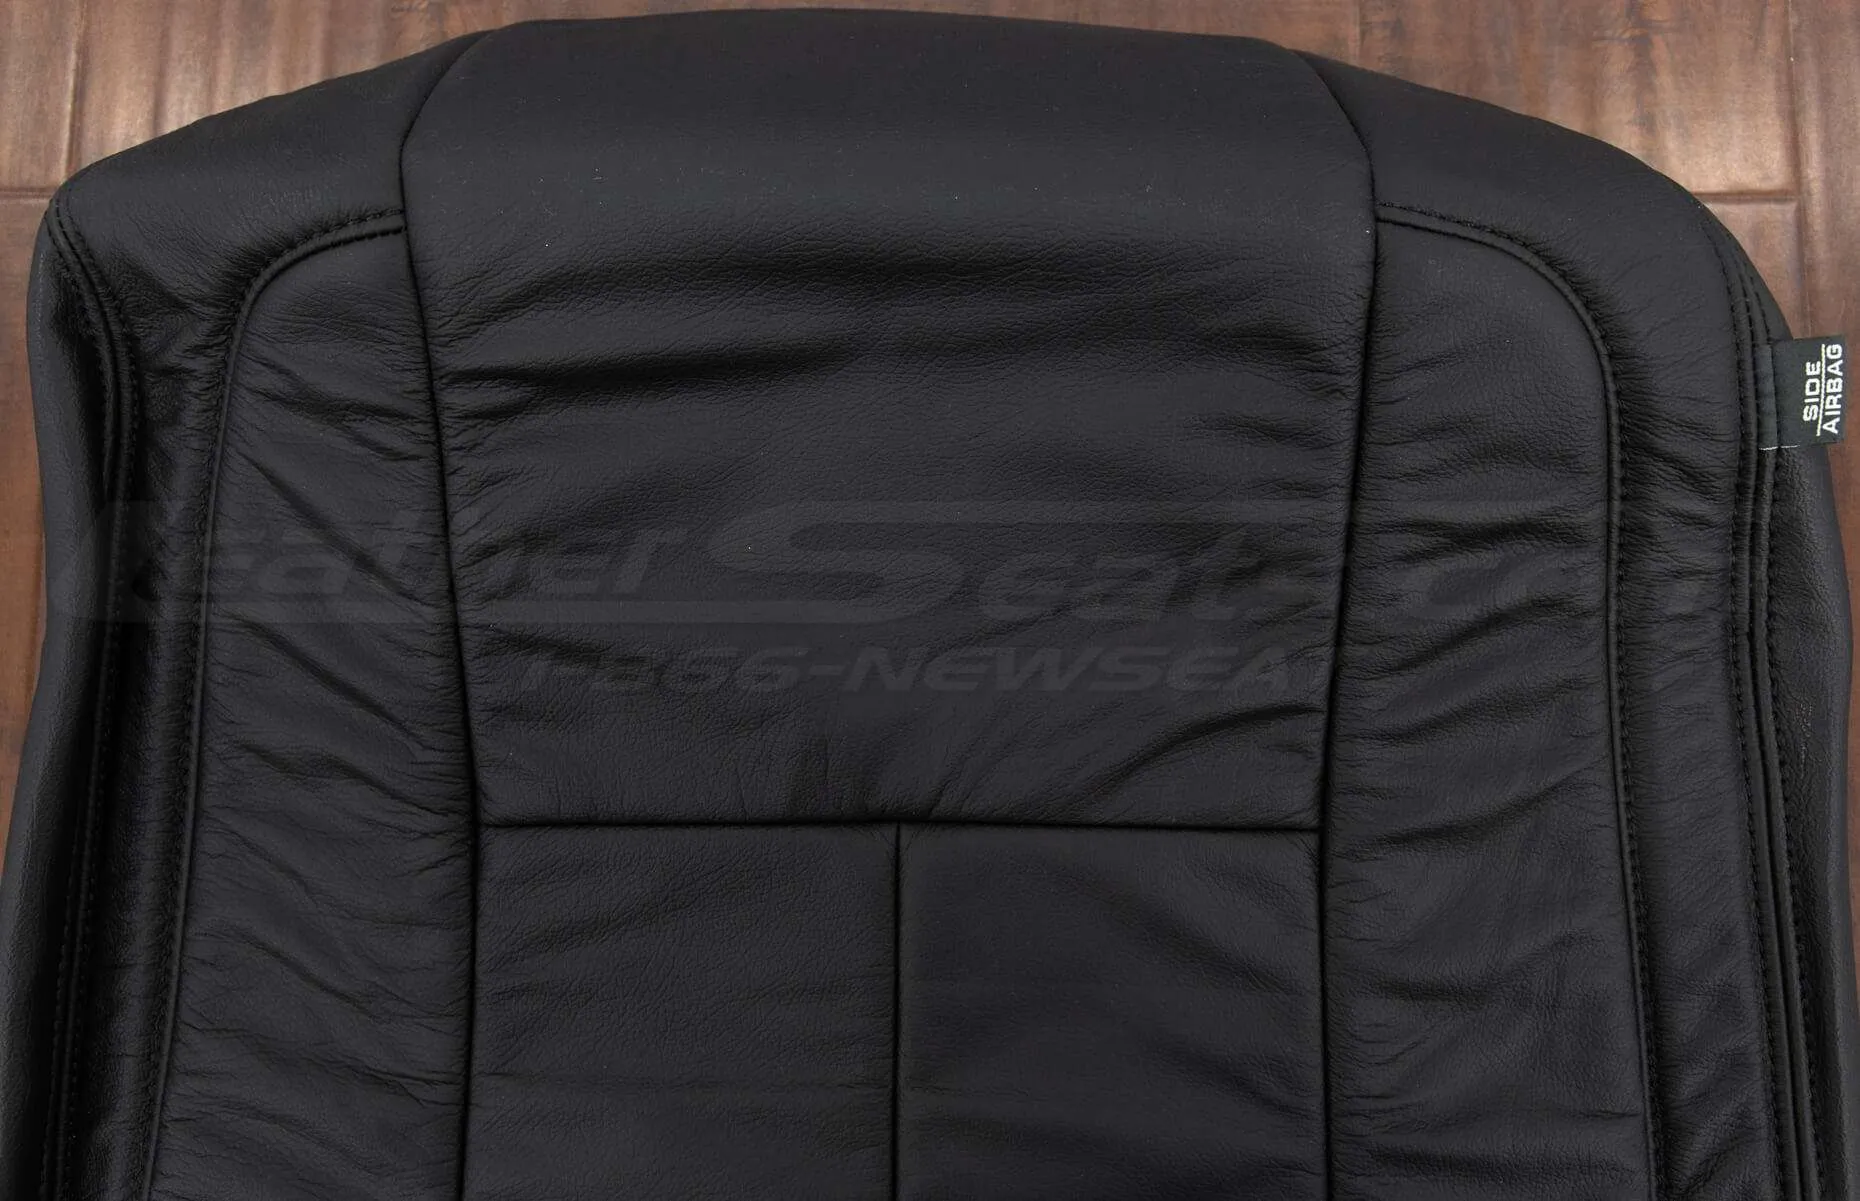 Nissan Titan Upholstery Kit - Black - Front backrest close-up